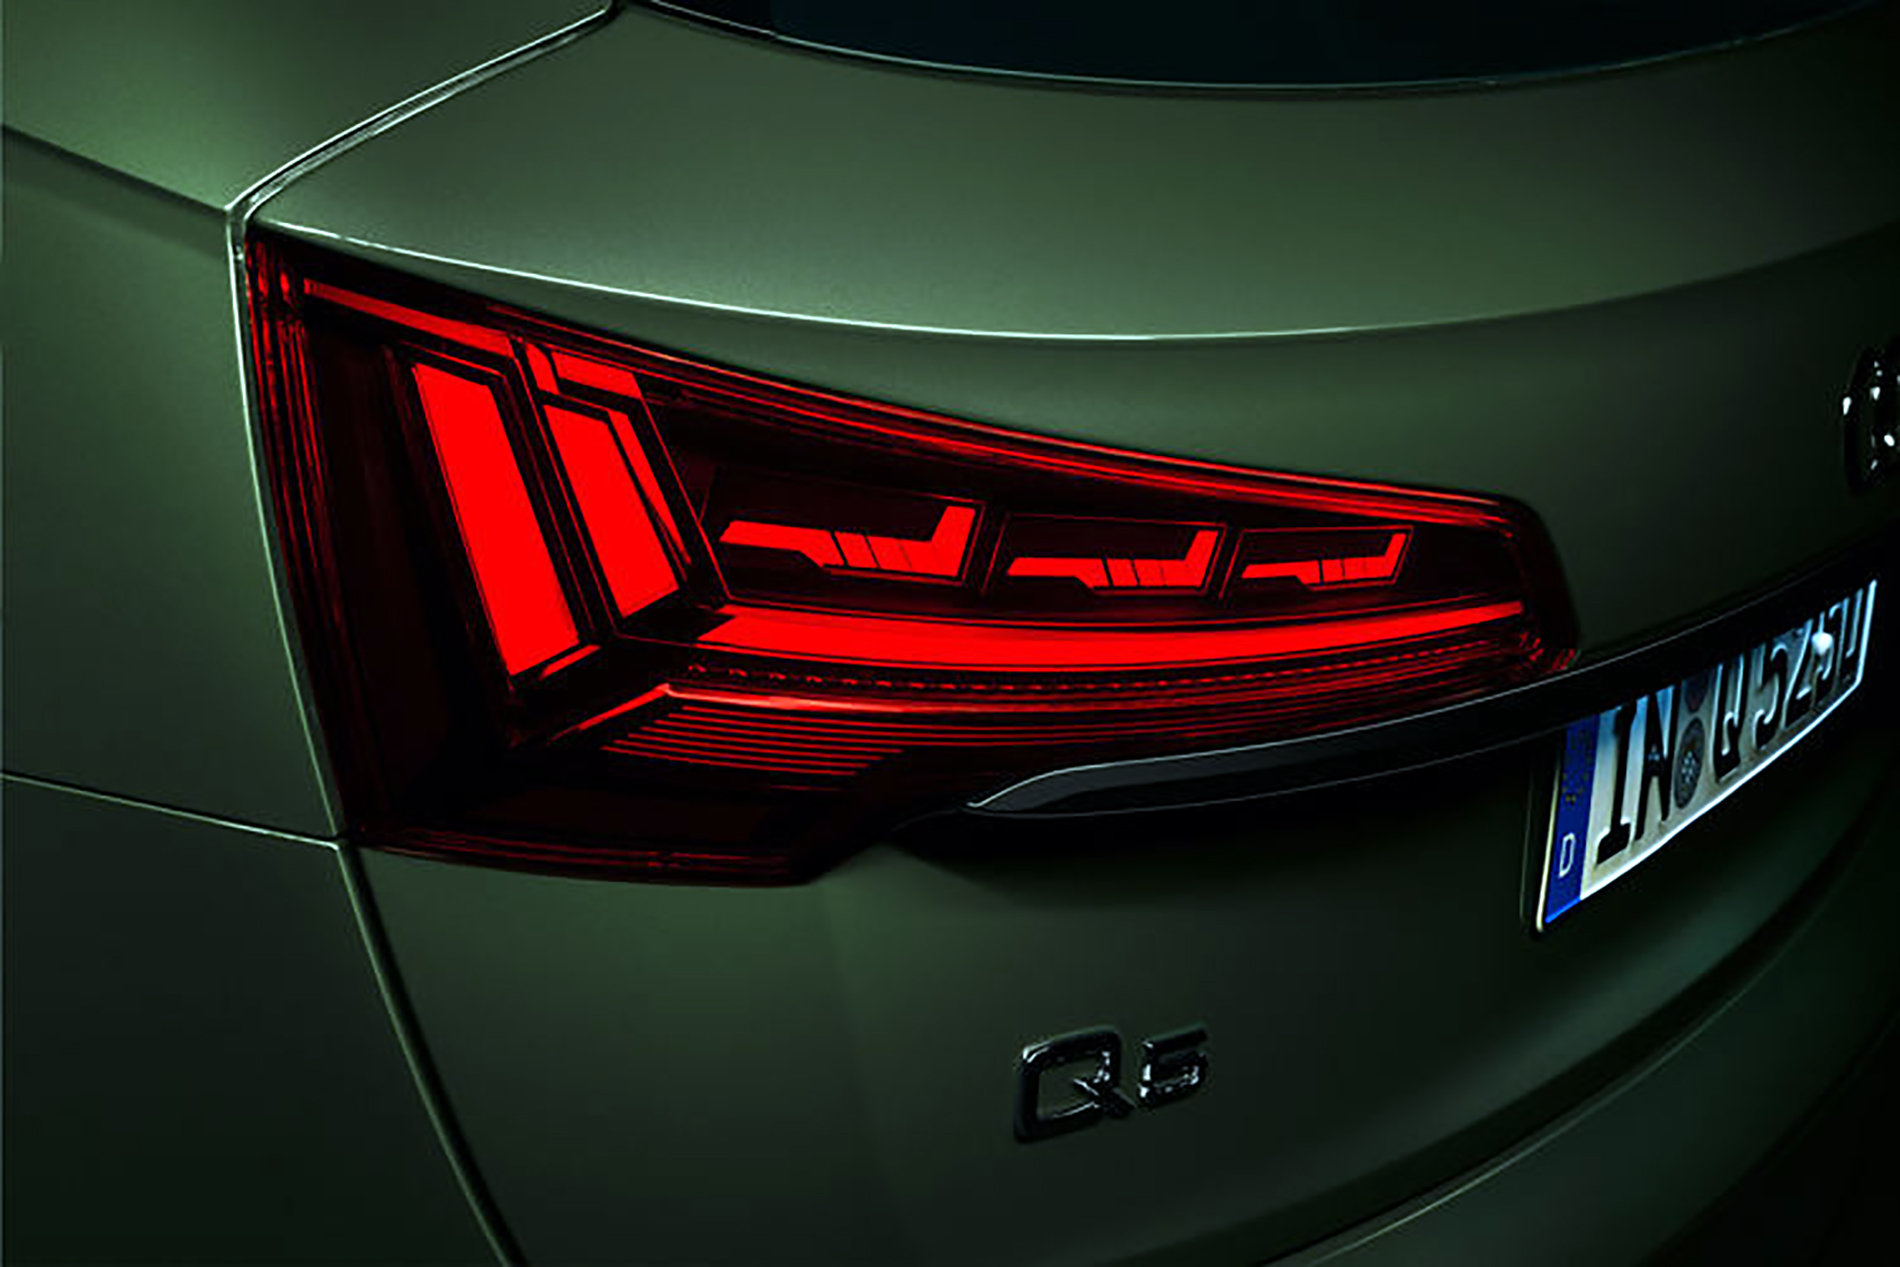 Audi wdraża technikę OLED nowej generacji